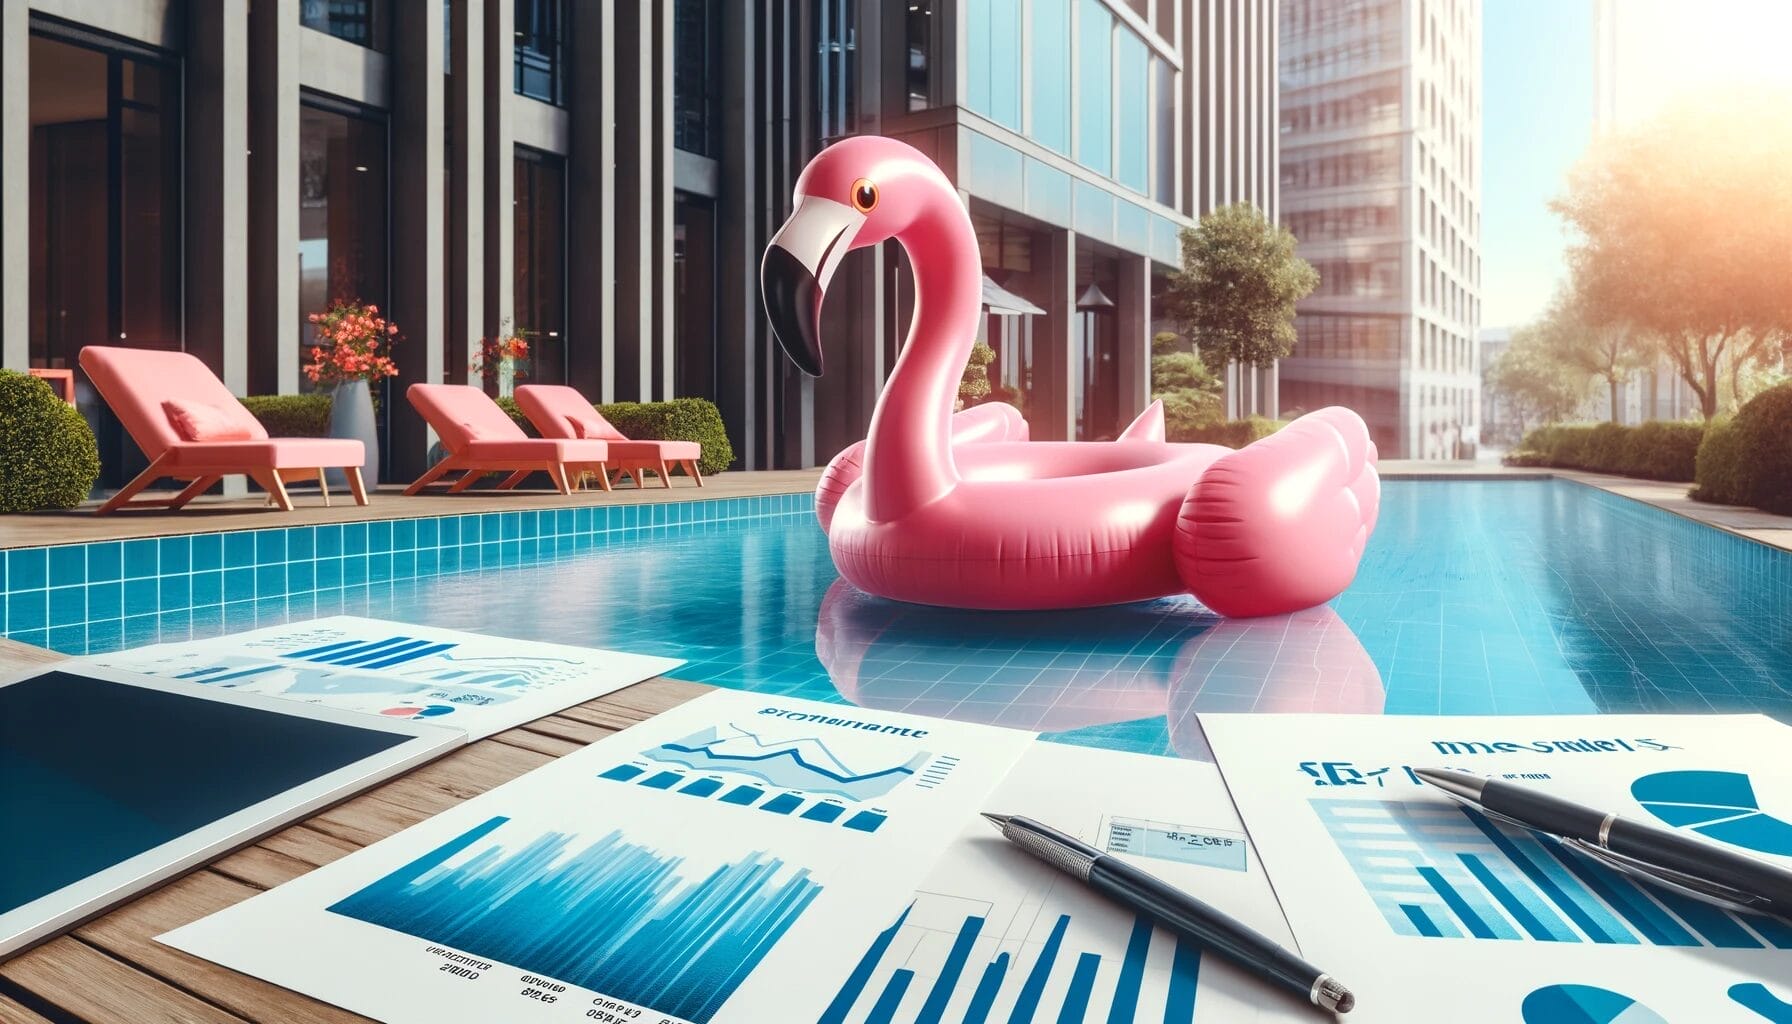 Aufblasbarer pinker Flamingo in einem Swimmingpool, umgeben von Finanzdiagrammen und Dokumenten, symbolisiert aktiv verwaltete Fonds. Im Hintergrund moderne Bürogebäude, die eine professionell verwaltete Investitionsumgebung darstellen. Sonnige Atmosphäre betont Erfolg und finanzielles Wachstum.